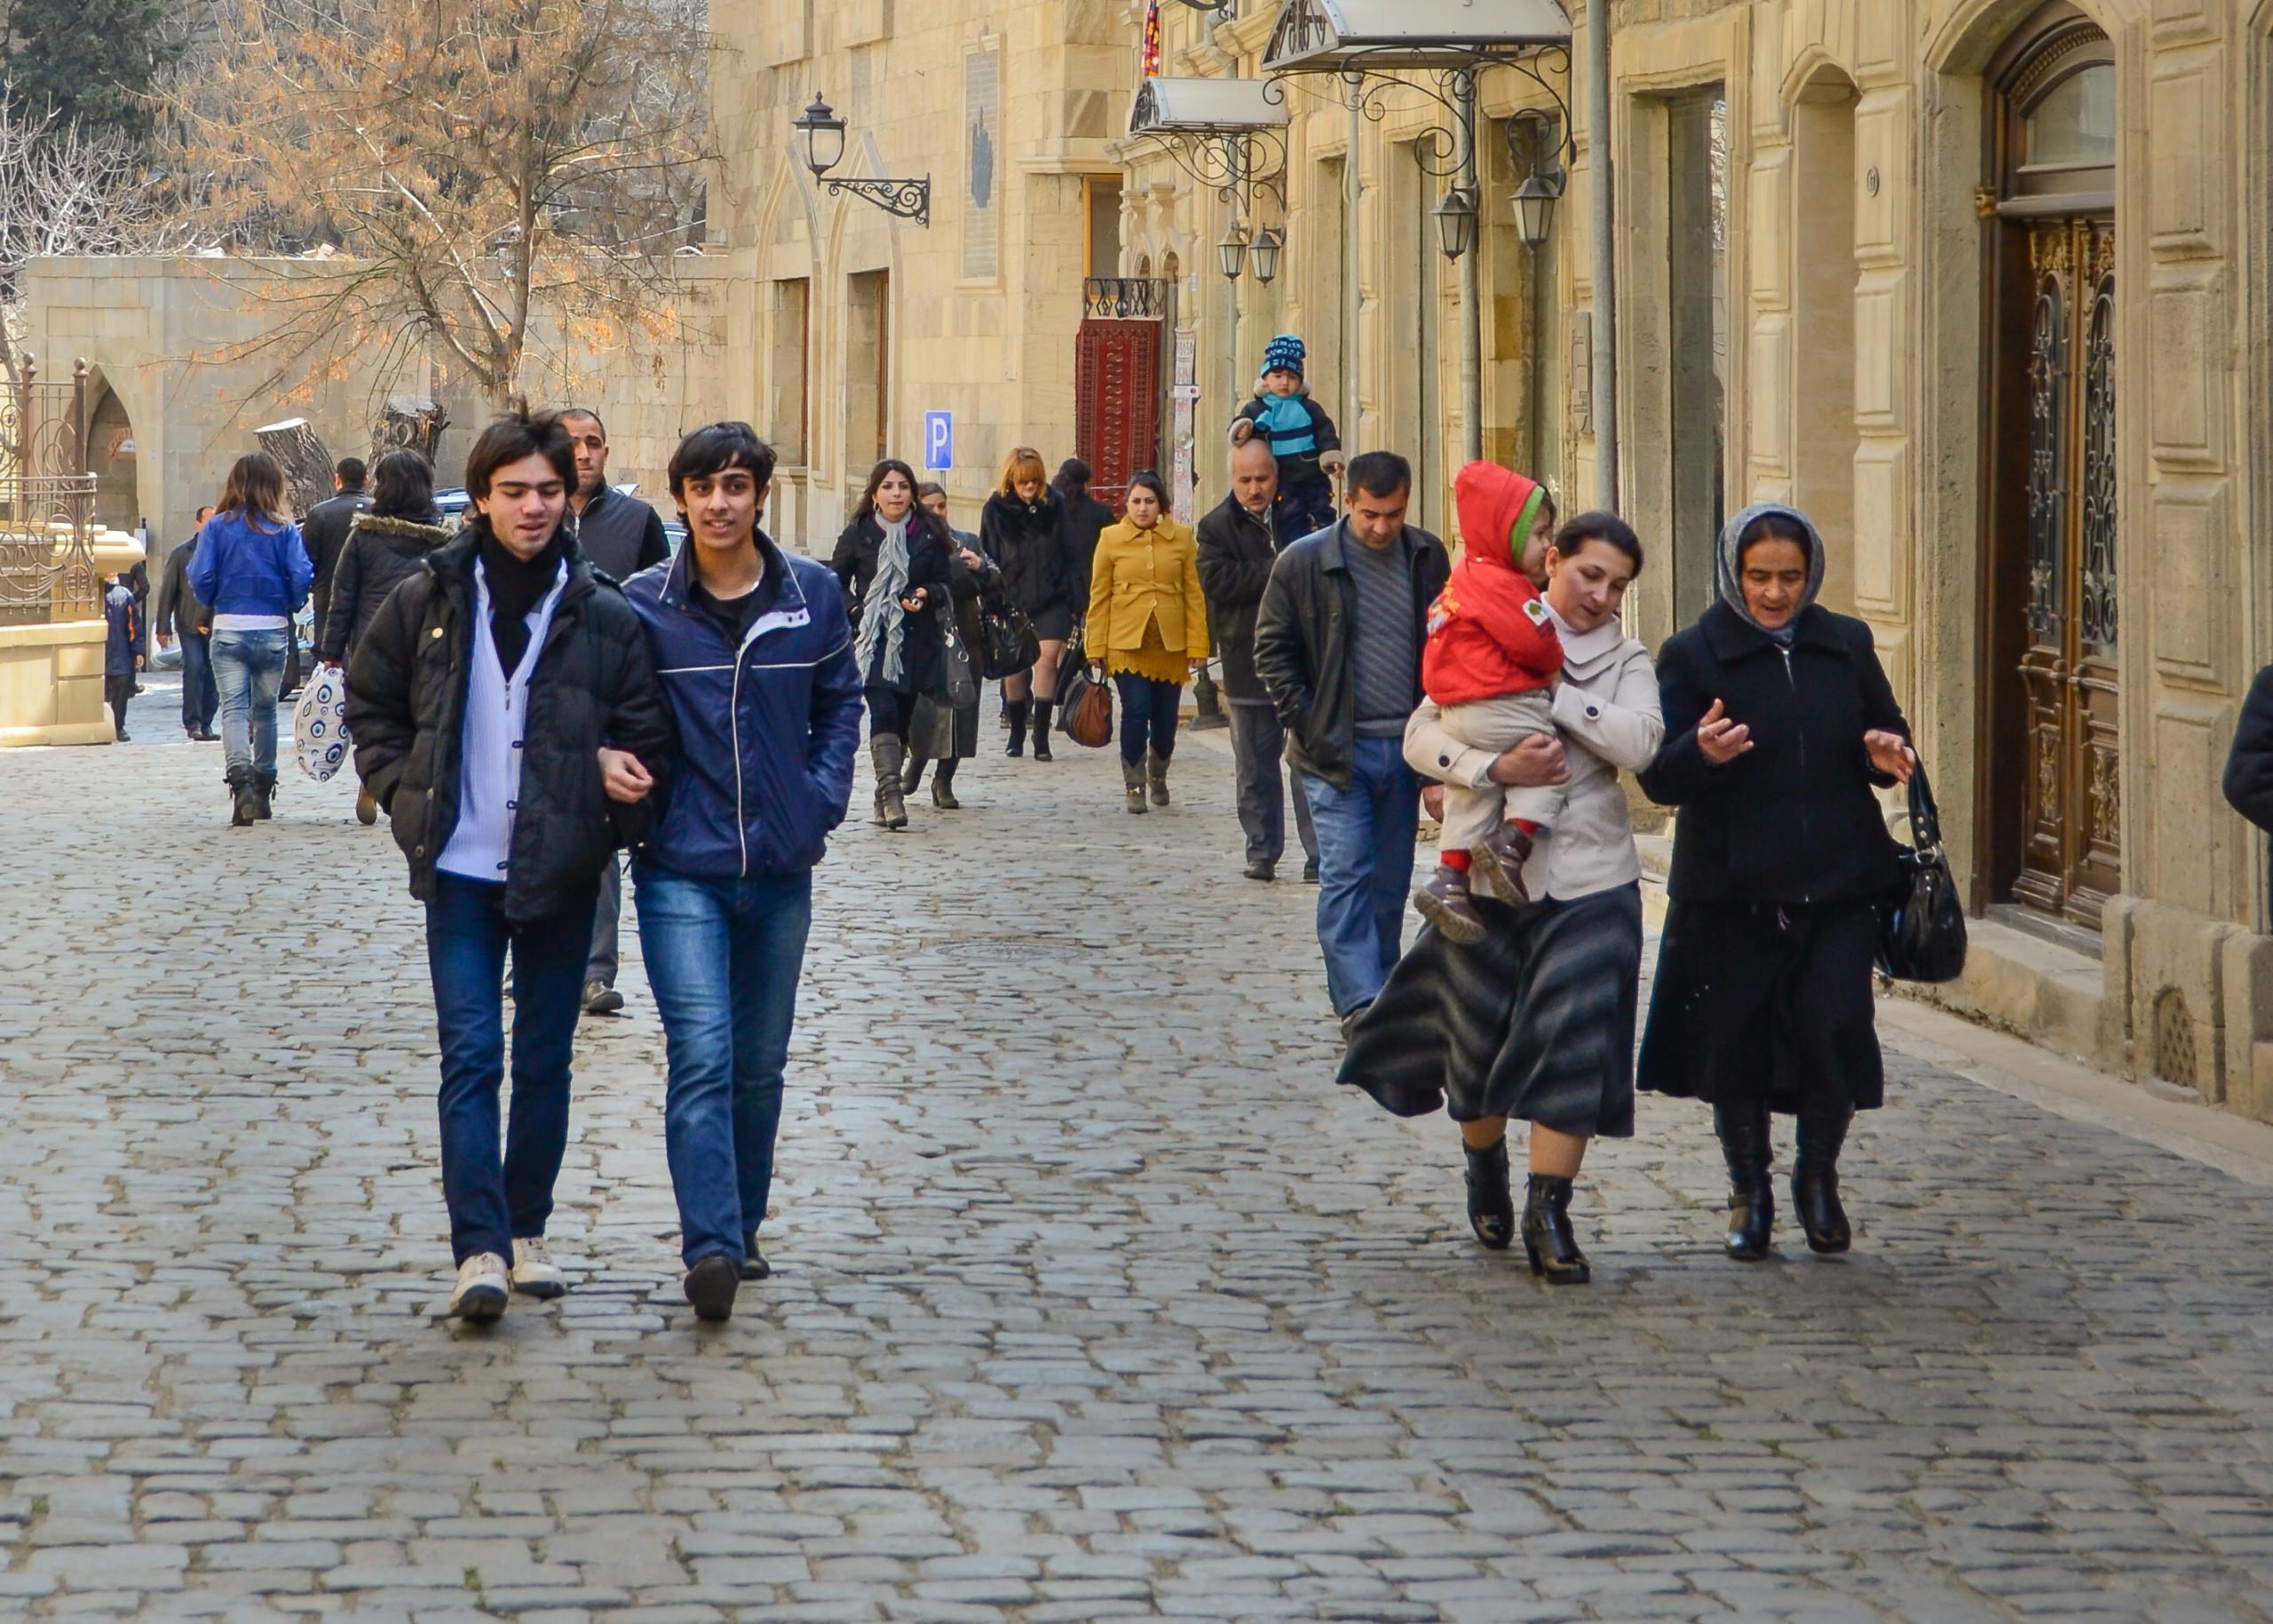 Kaukasialaisia ihmisiä kadulla kävelemässä